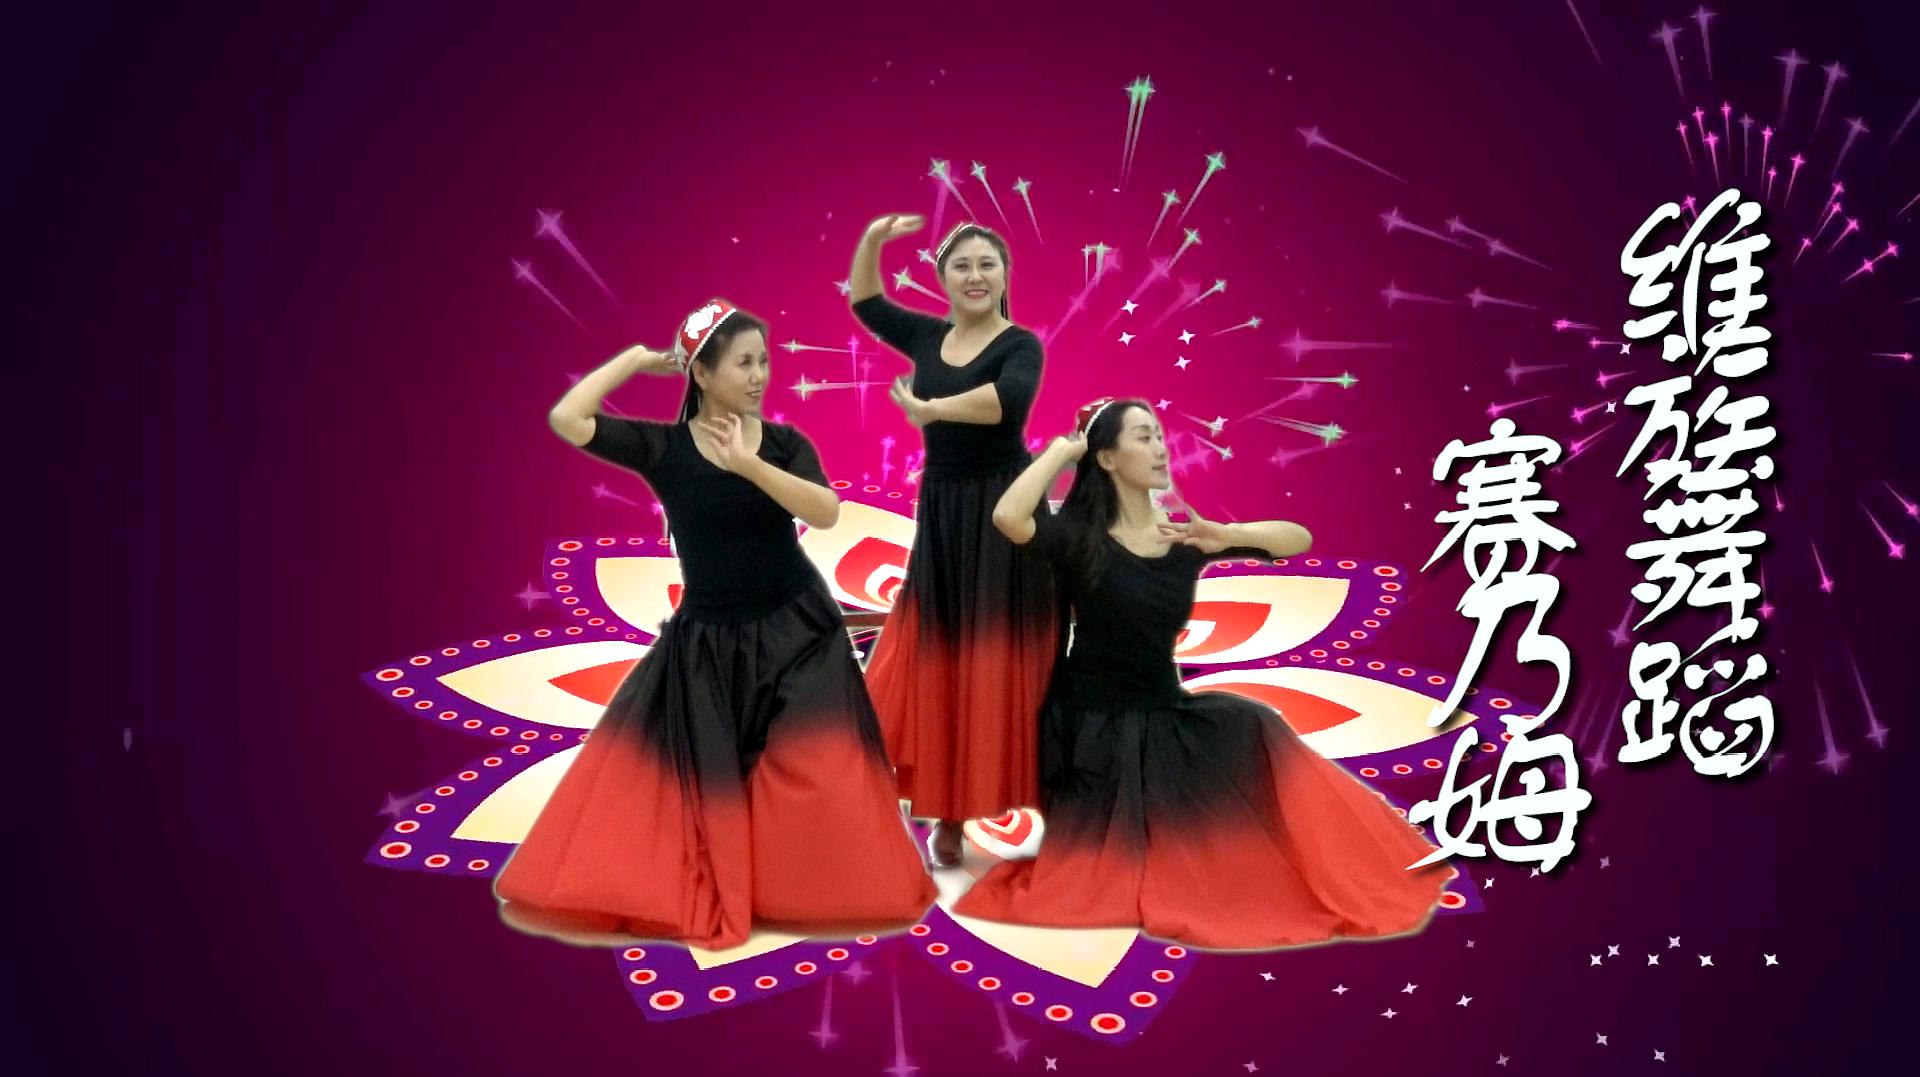 维族舞蹈《赛乃姆》热情奔放的造型,美妙动听的舞曲,百看不厌